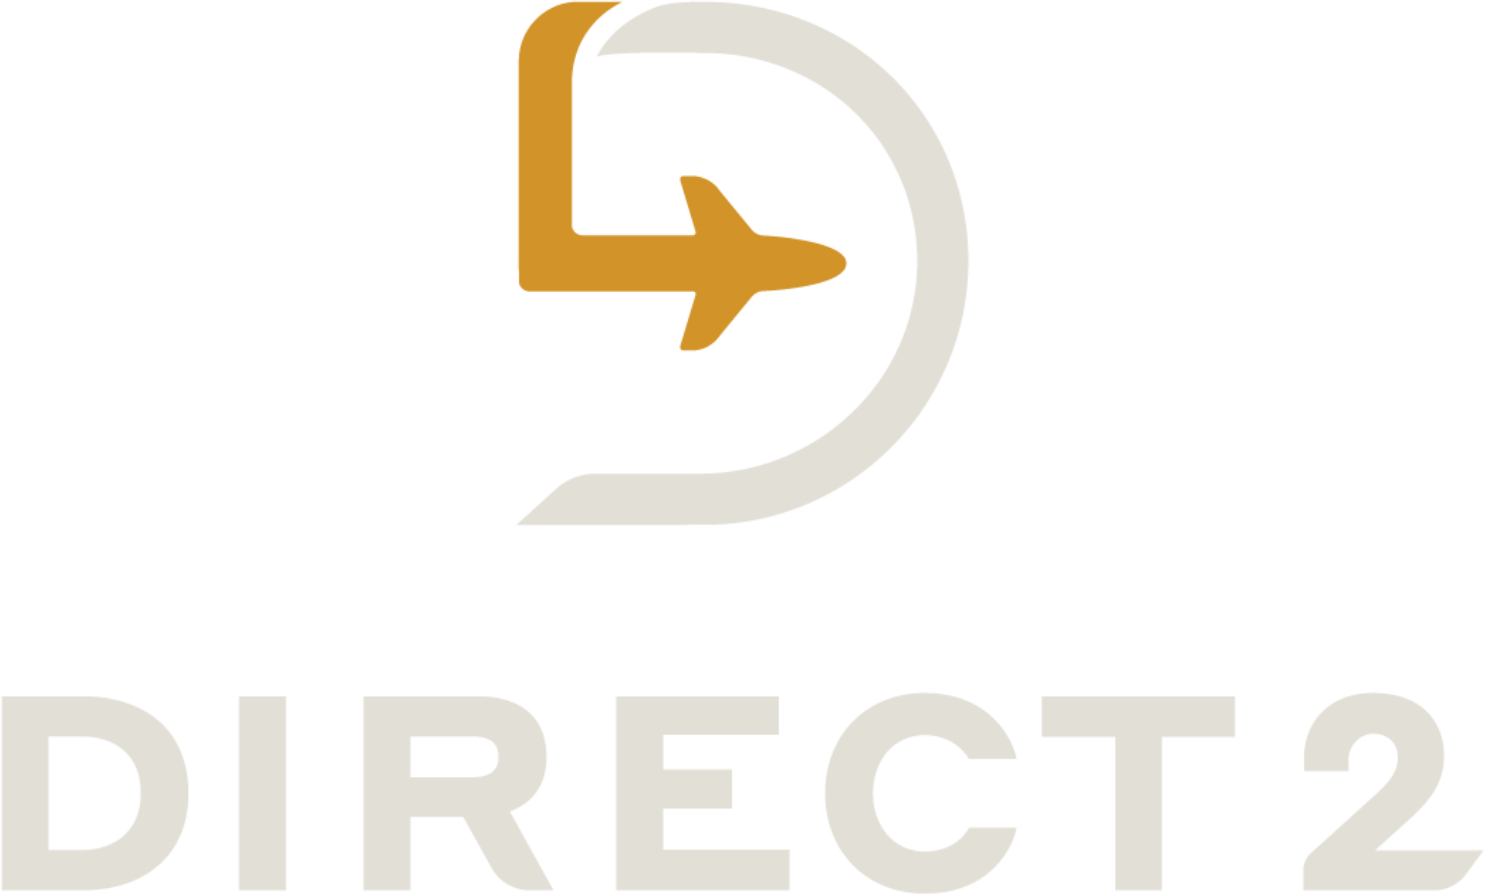 Direct2